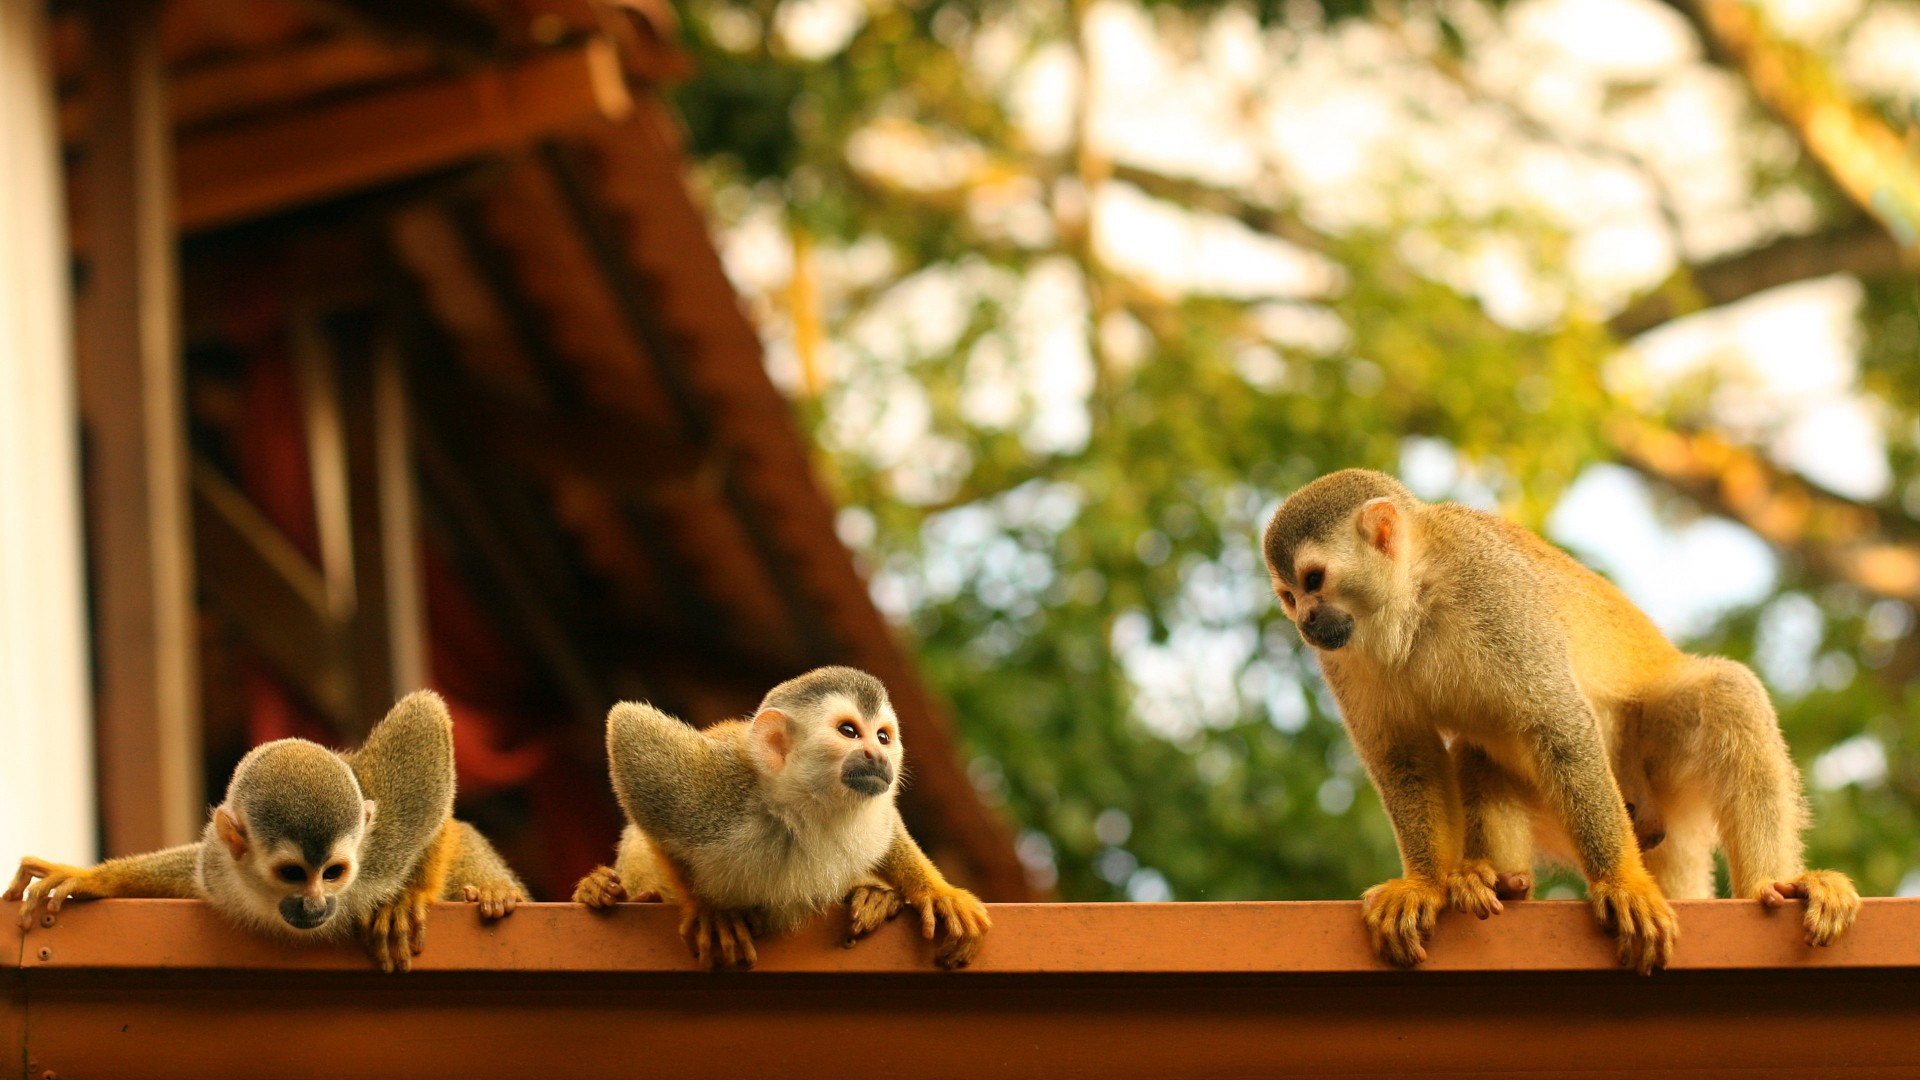 обезьяны, Паукообразные обезьяны, Коста-Рика, Monkeys, Atelidae, Costa Rica (horizontal)